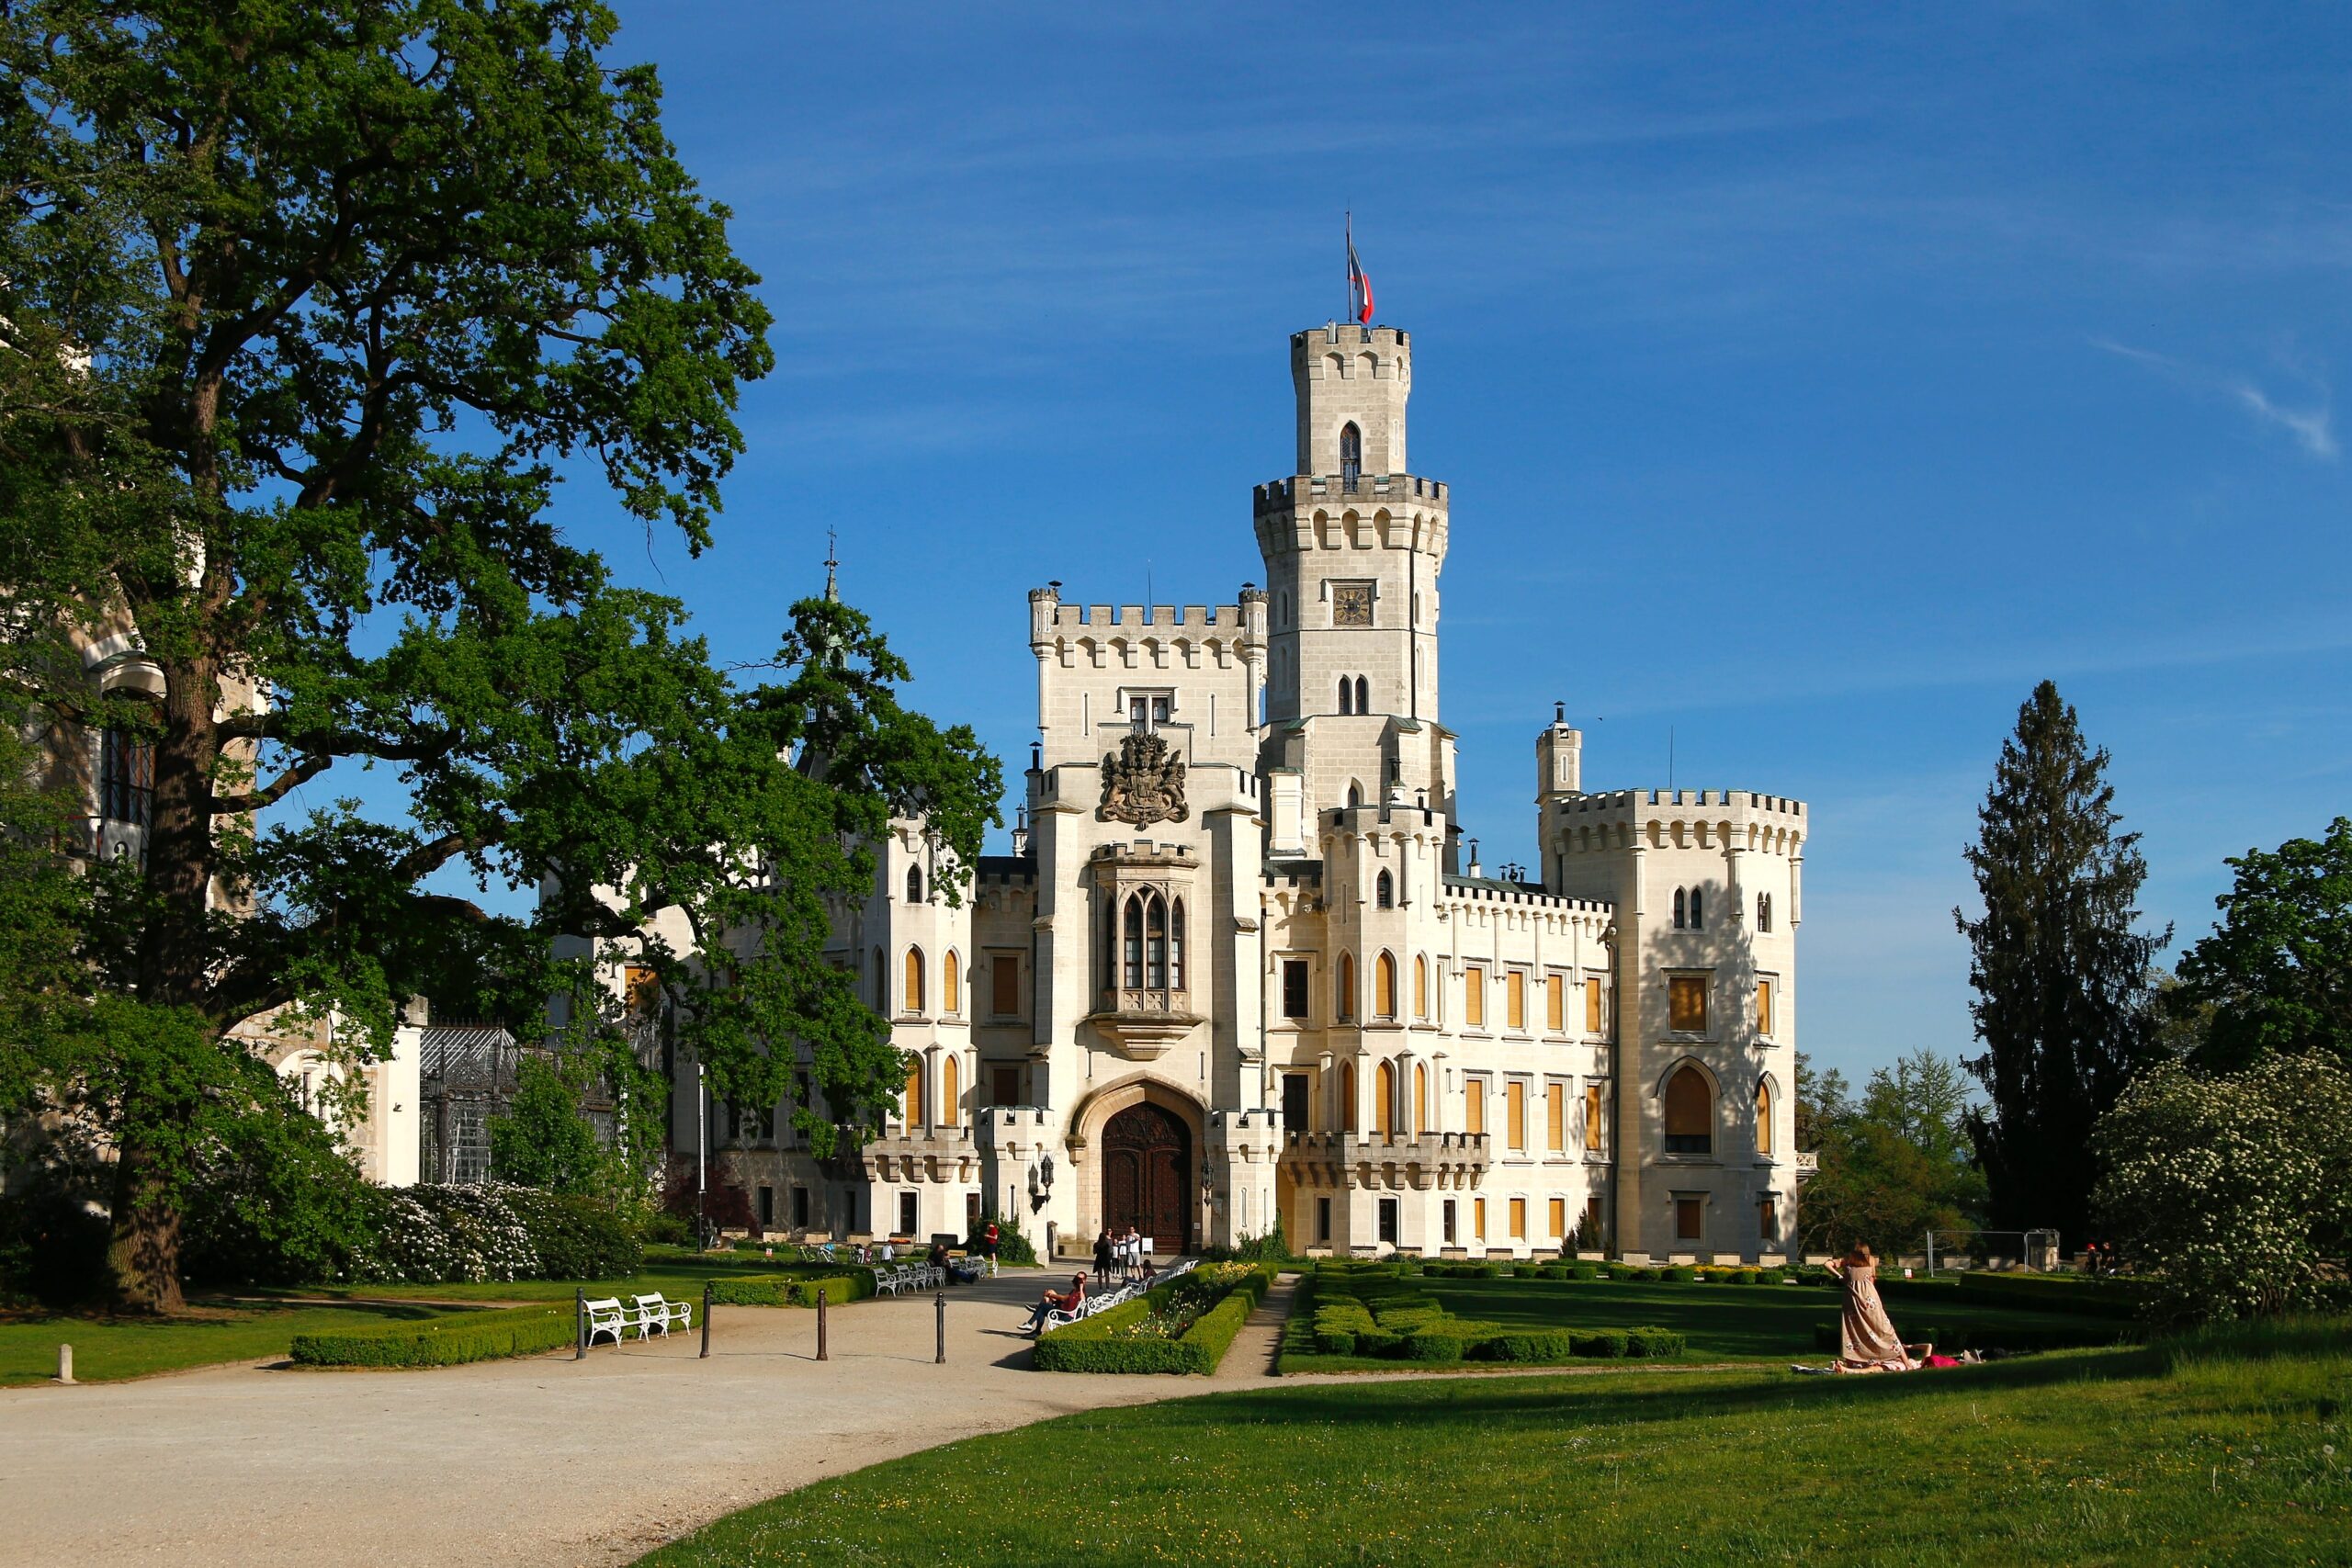 Castle Hluboká nad Vltavou, Czech Republic